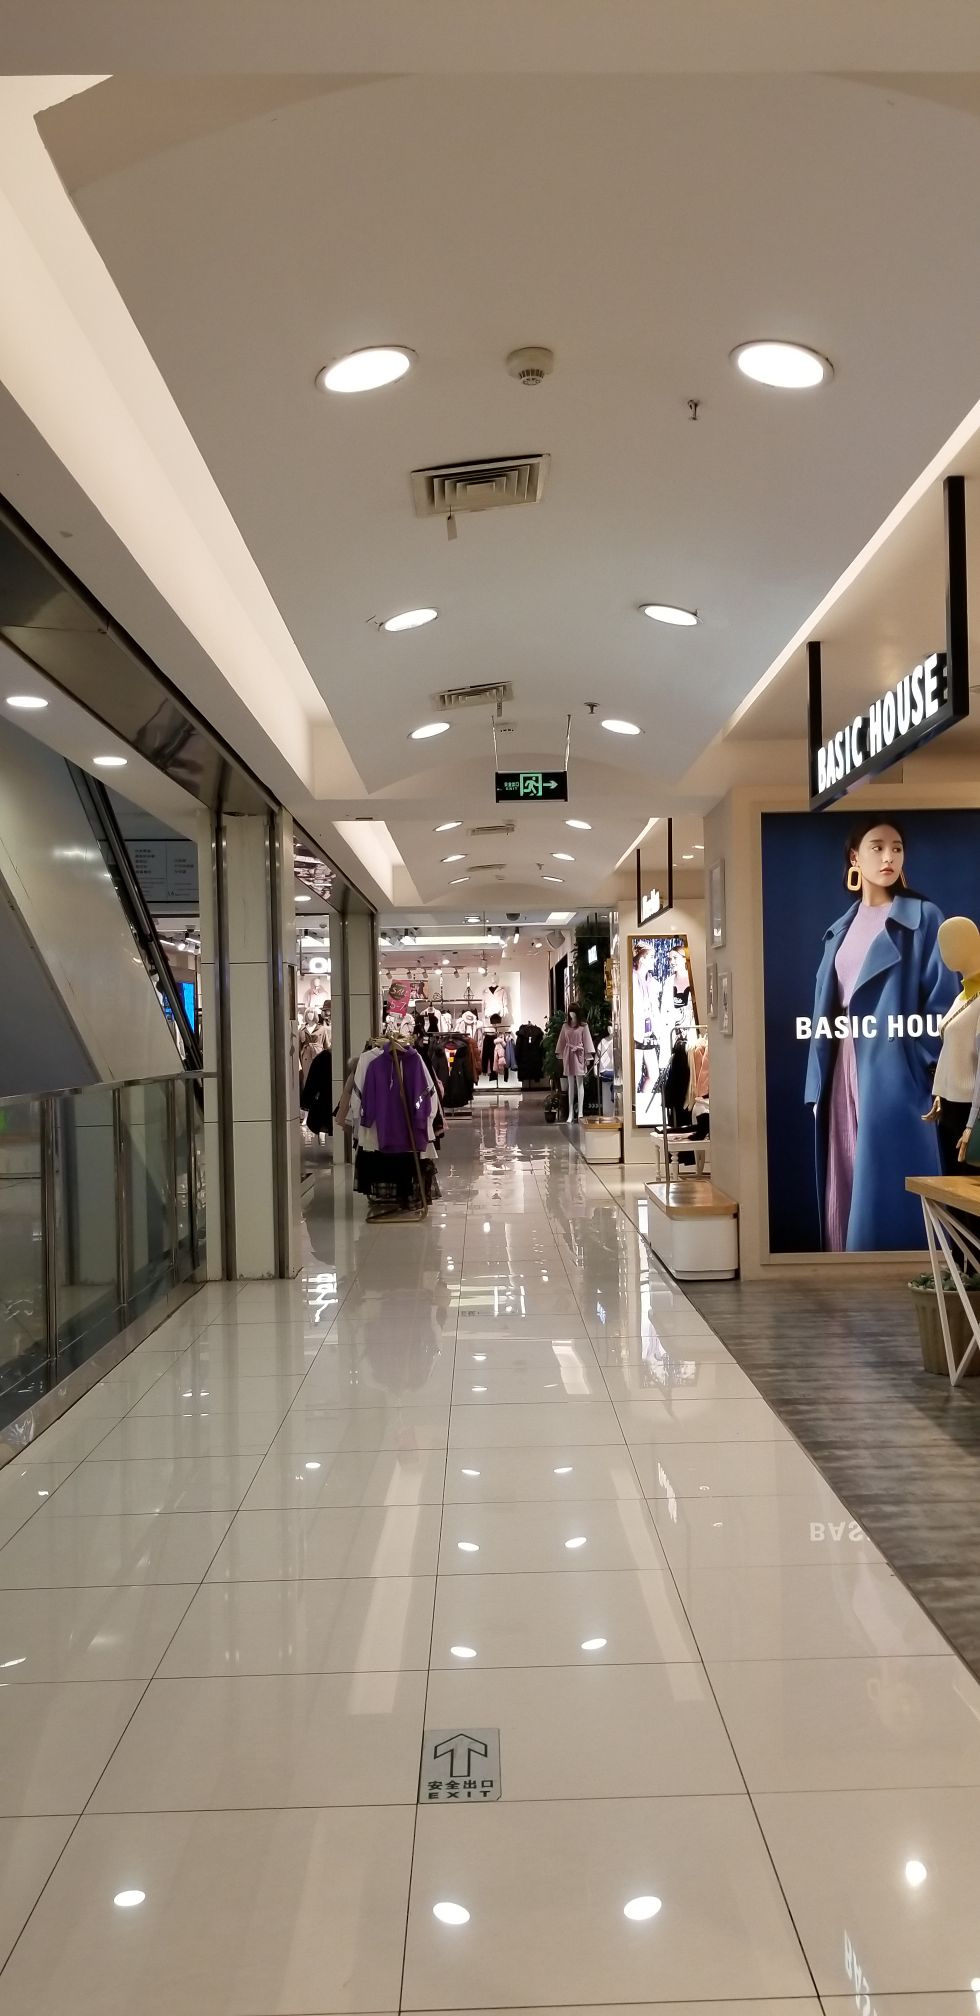 【携程攻略】沈阳百盛购物中心购物,这家百盛购物中心在郑州中华路21